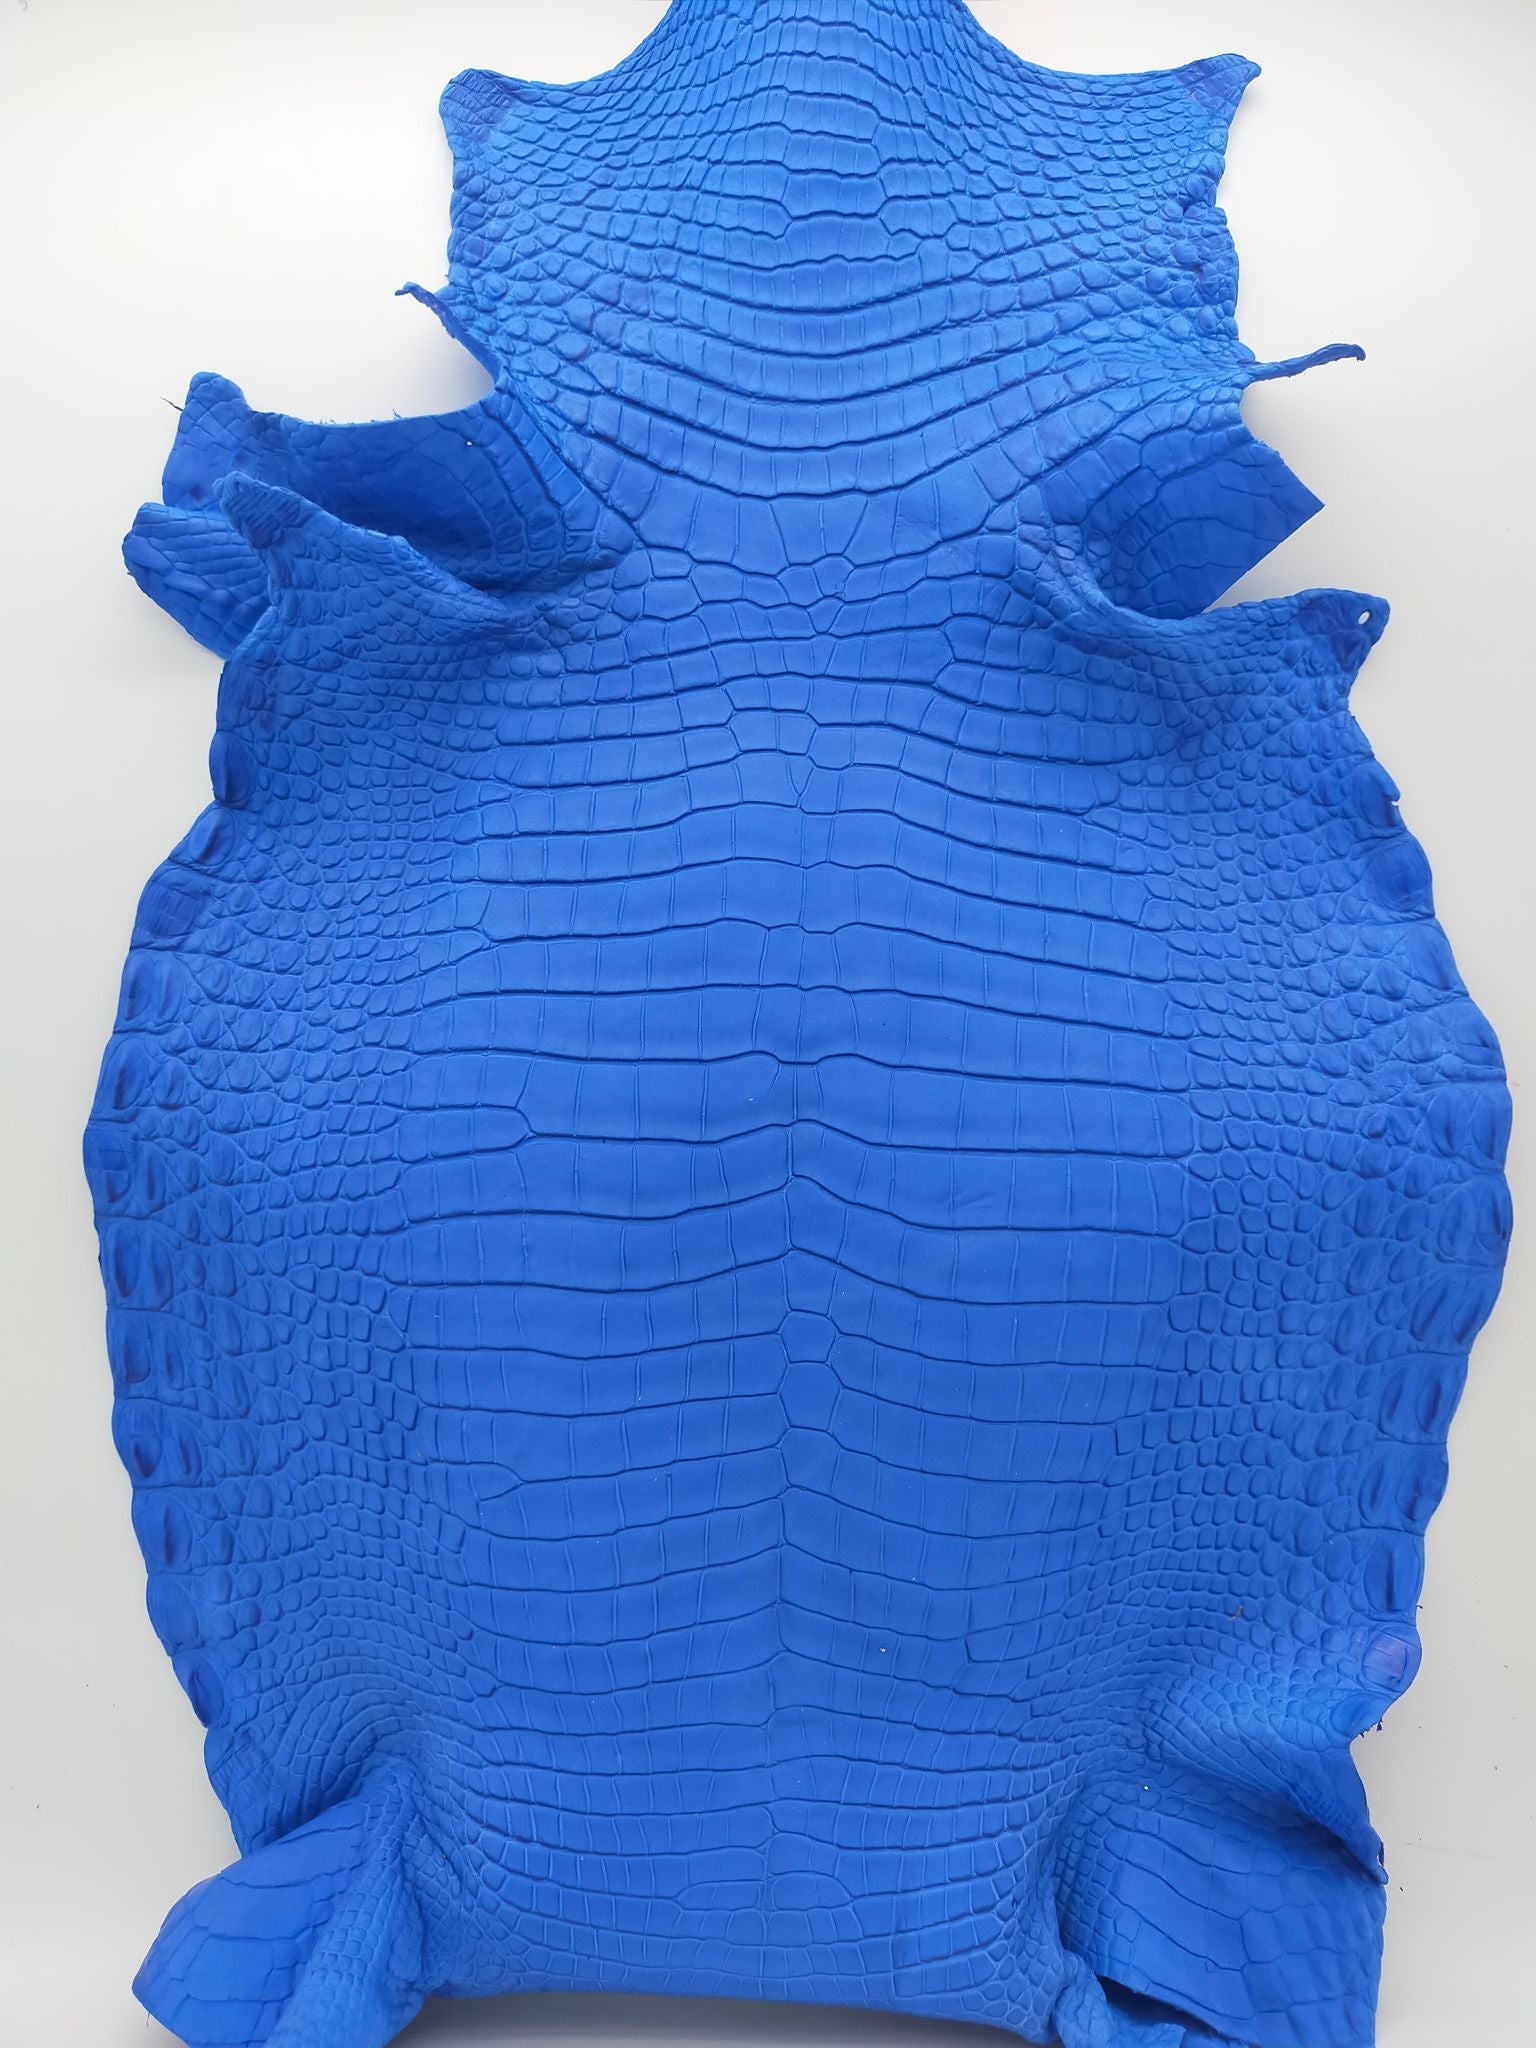 Matte Nile Crocodile - Royal Blue / 34cm - Leather & Vinyl